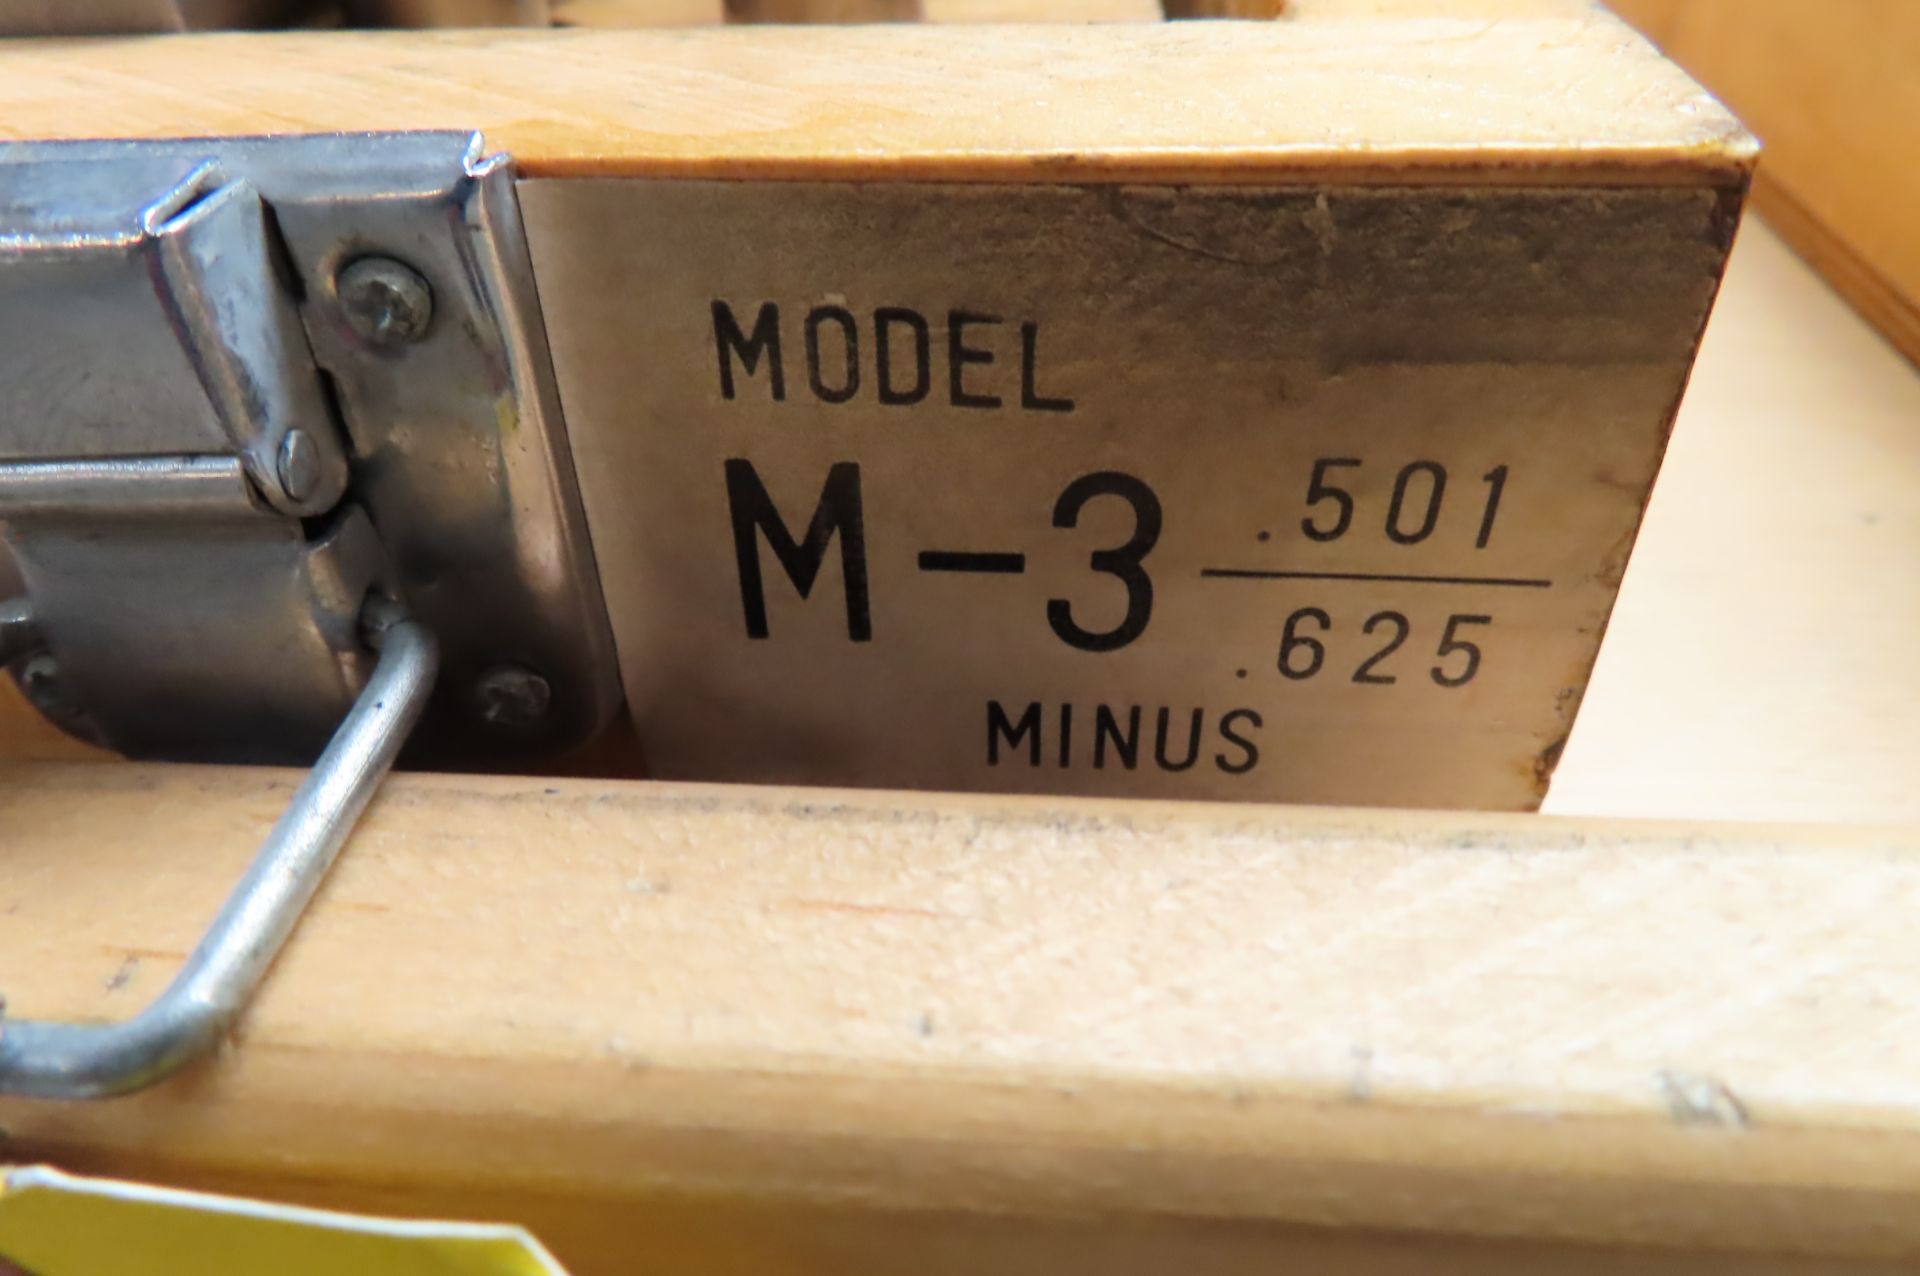 M-3 MINUS PIN GAGE SET, 0.501 - 0.625 - Image 3 of 3